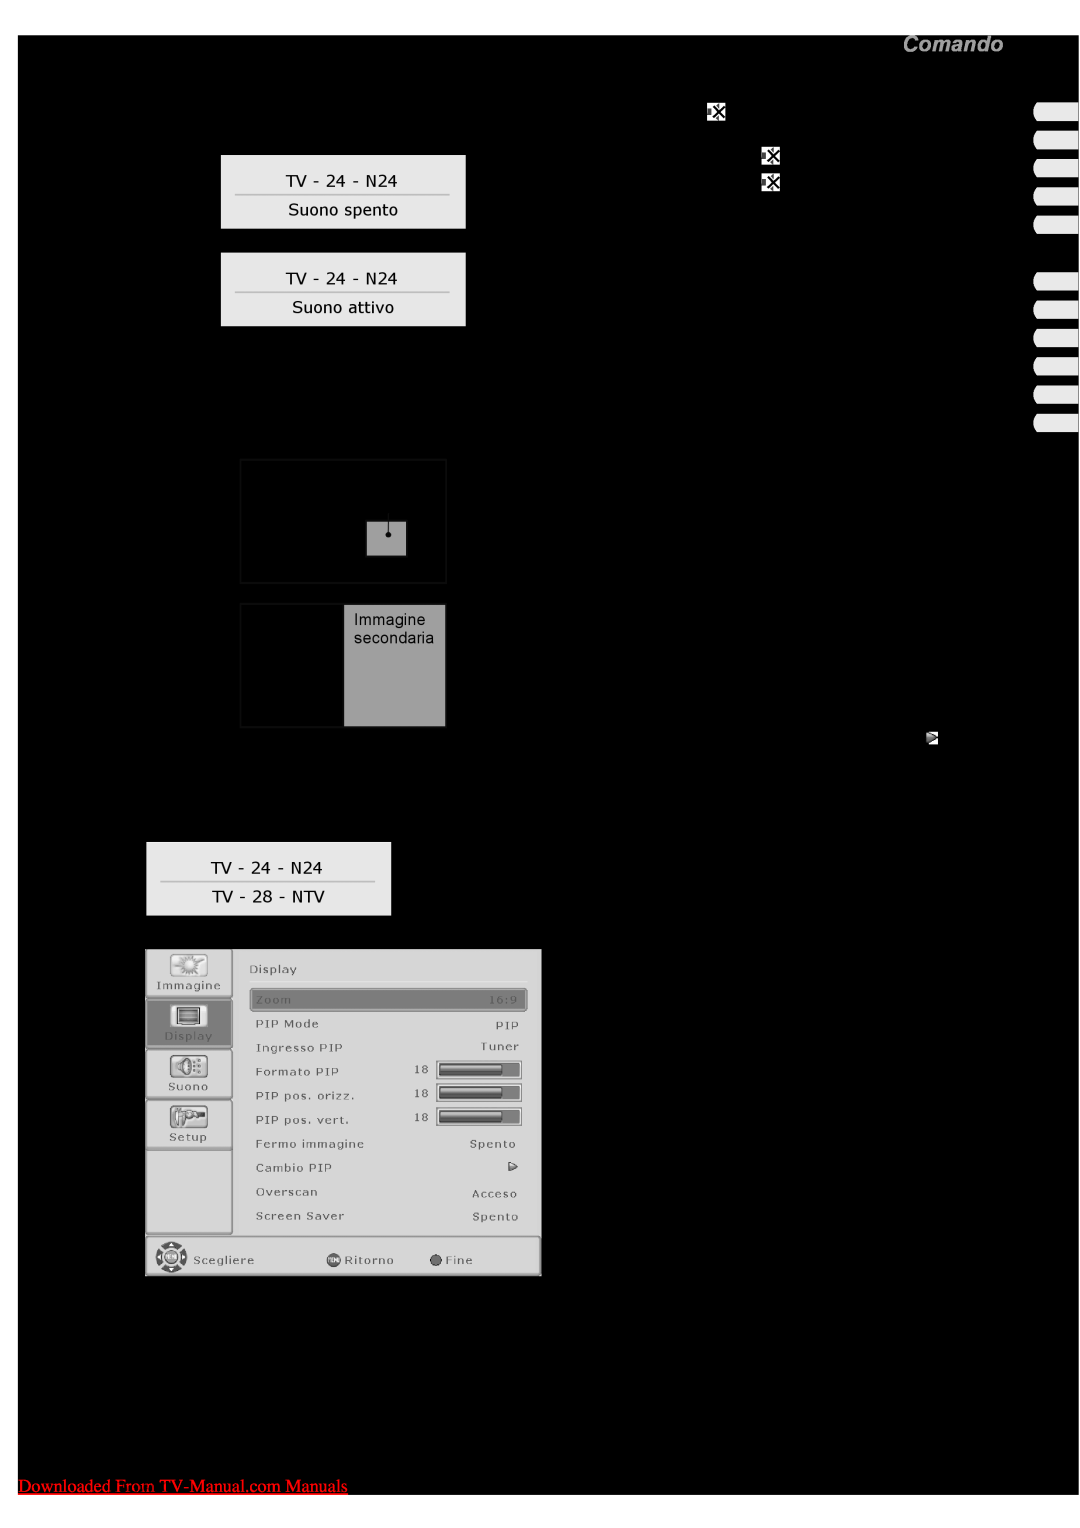 Fujitsu VQ40-1, PQ50-1, PQ42-1 manual Utilizzo della funzione Immagine nell’immagine, Comando, Italiano 